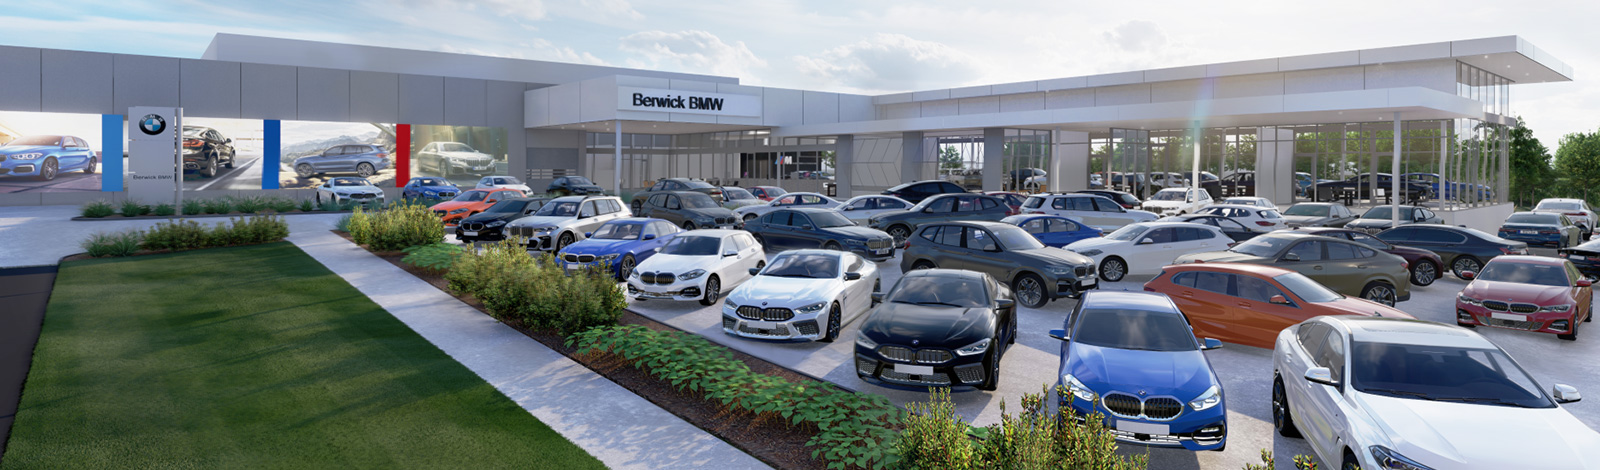 New Berwick BMW 2020 - GoAutoNews Premium